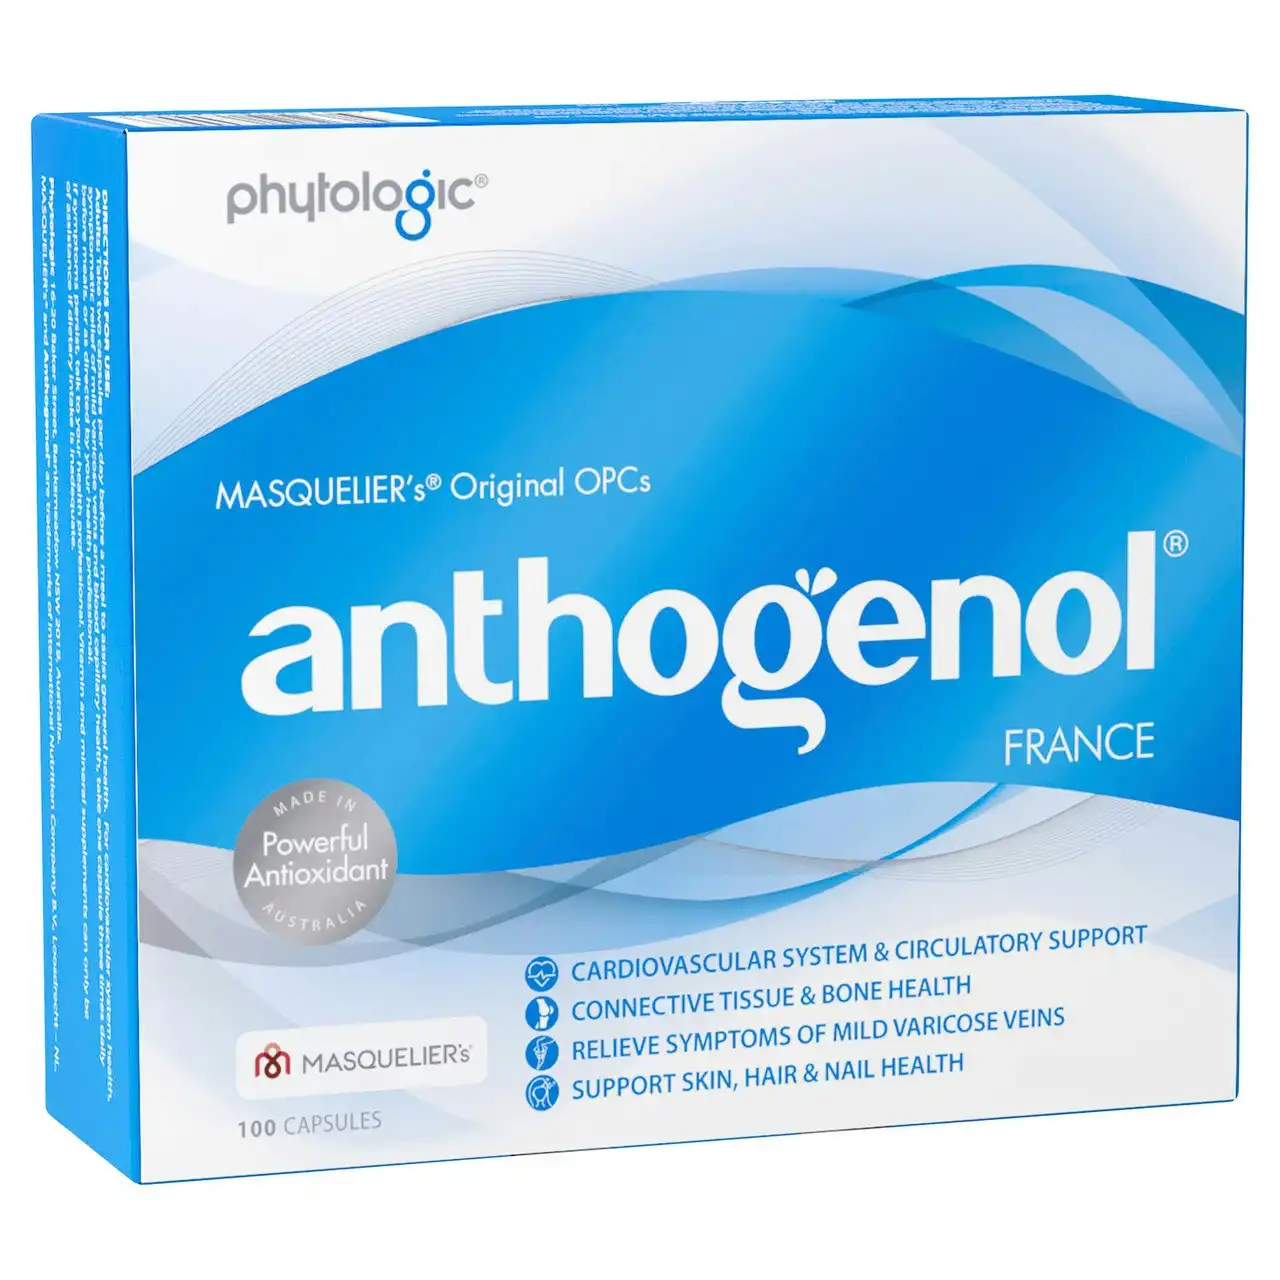 Anthogenol(R) 100 capsules